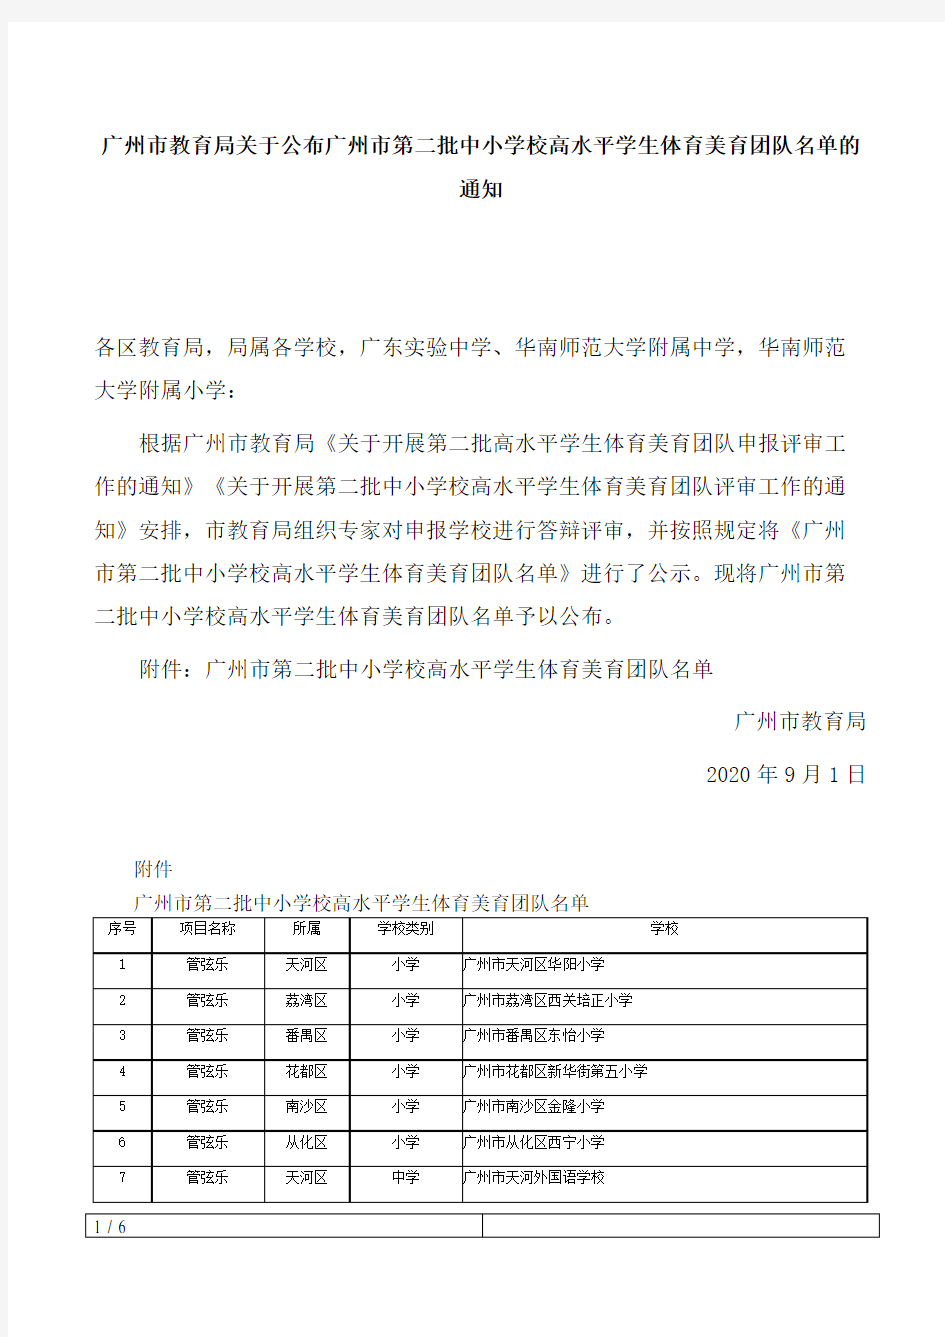 广州市教育局关于公布广州市第二批中小学校高水平学生体育美育团队名单的通知